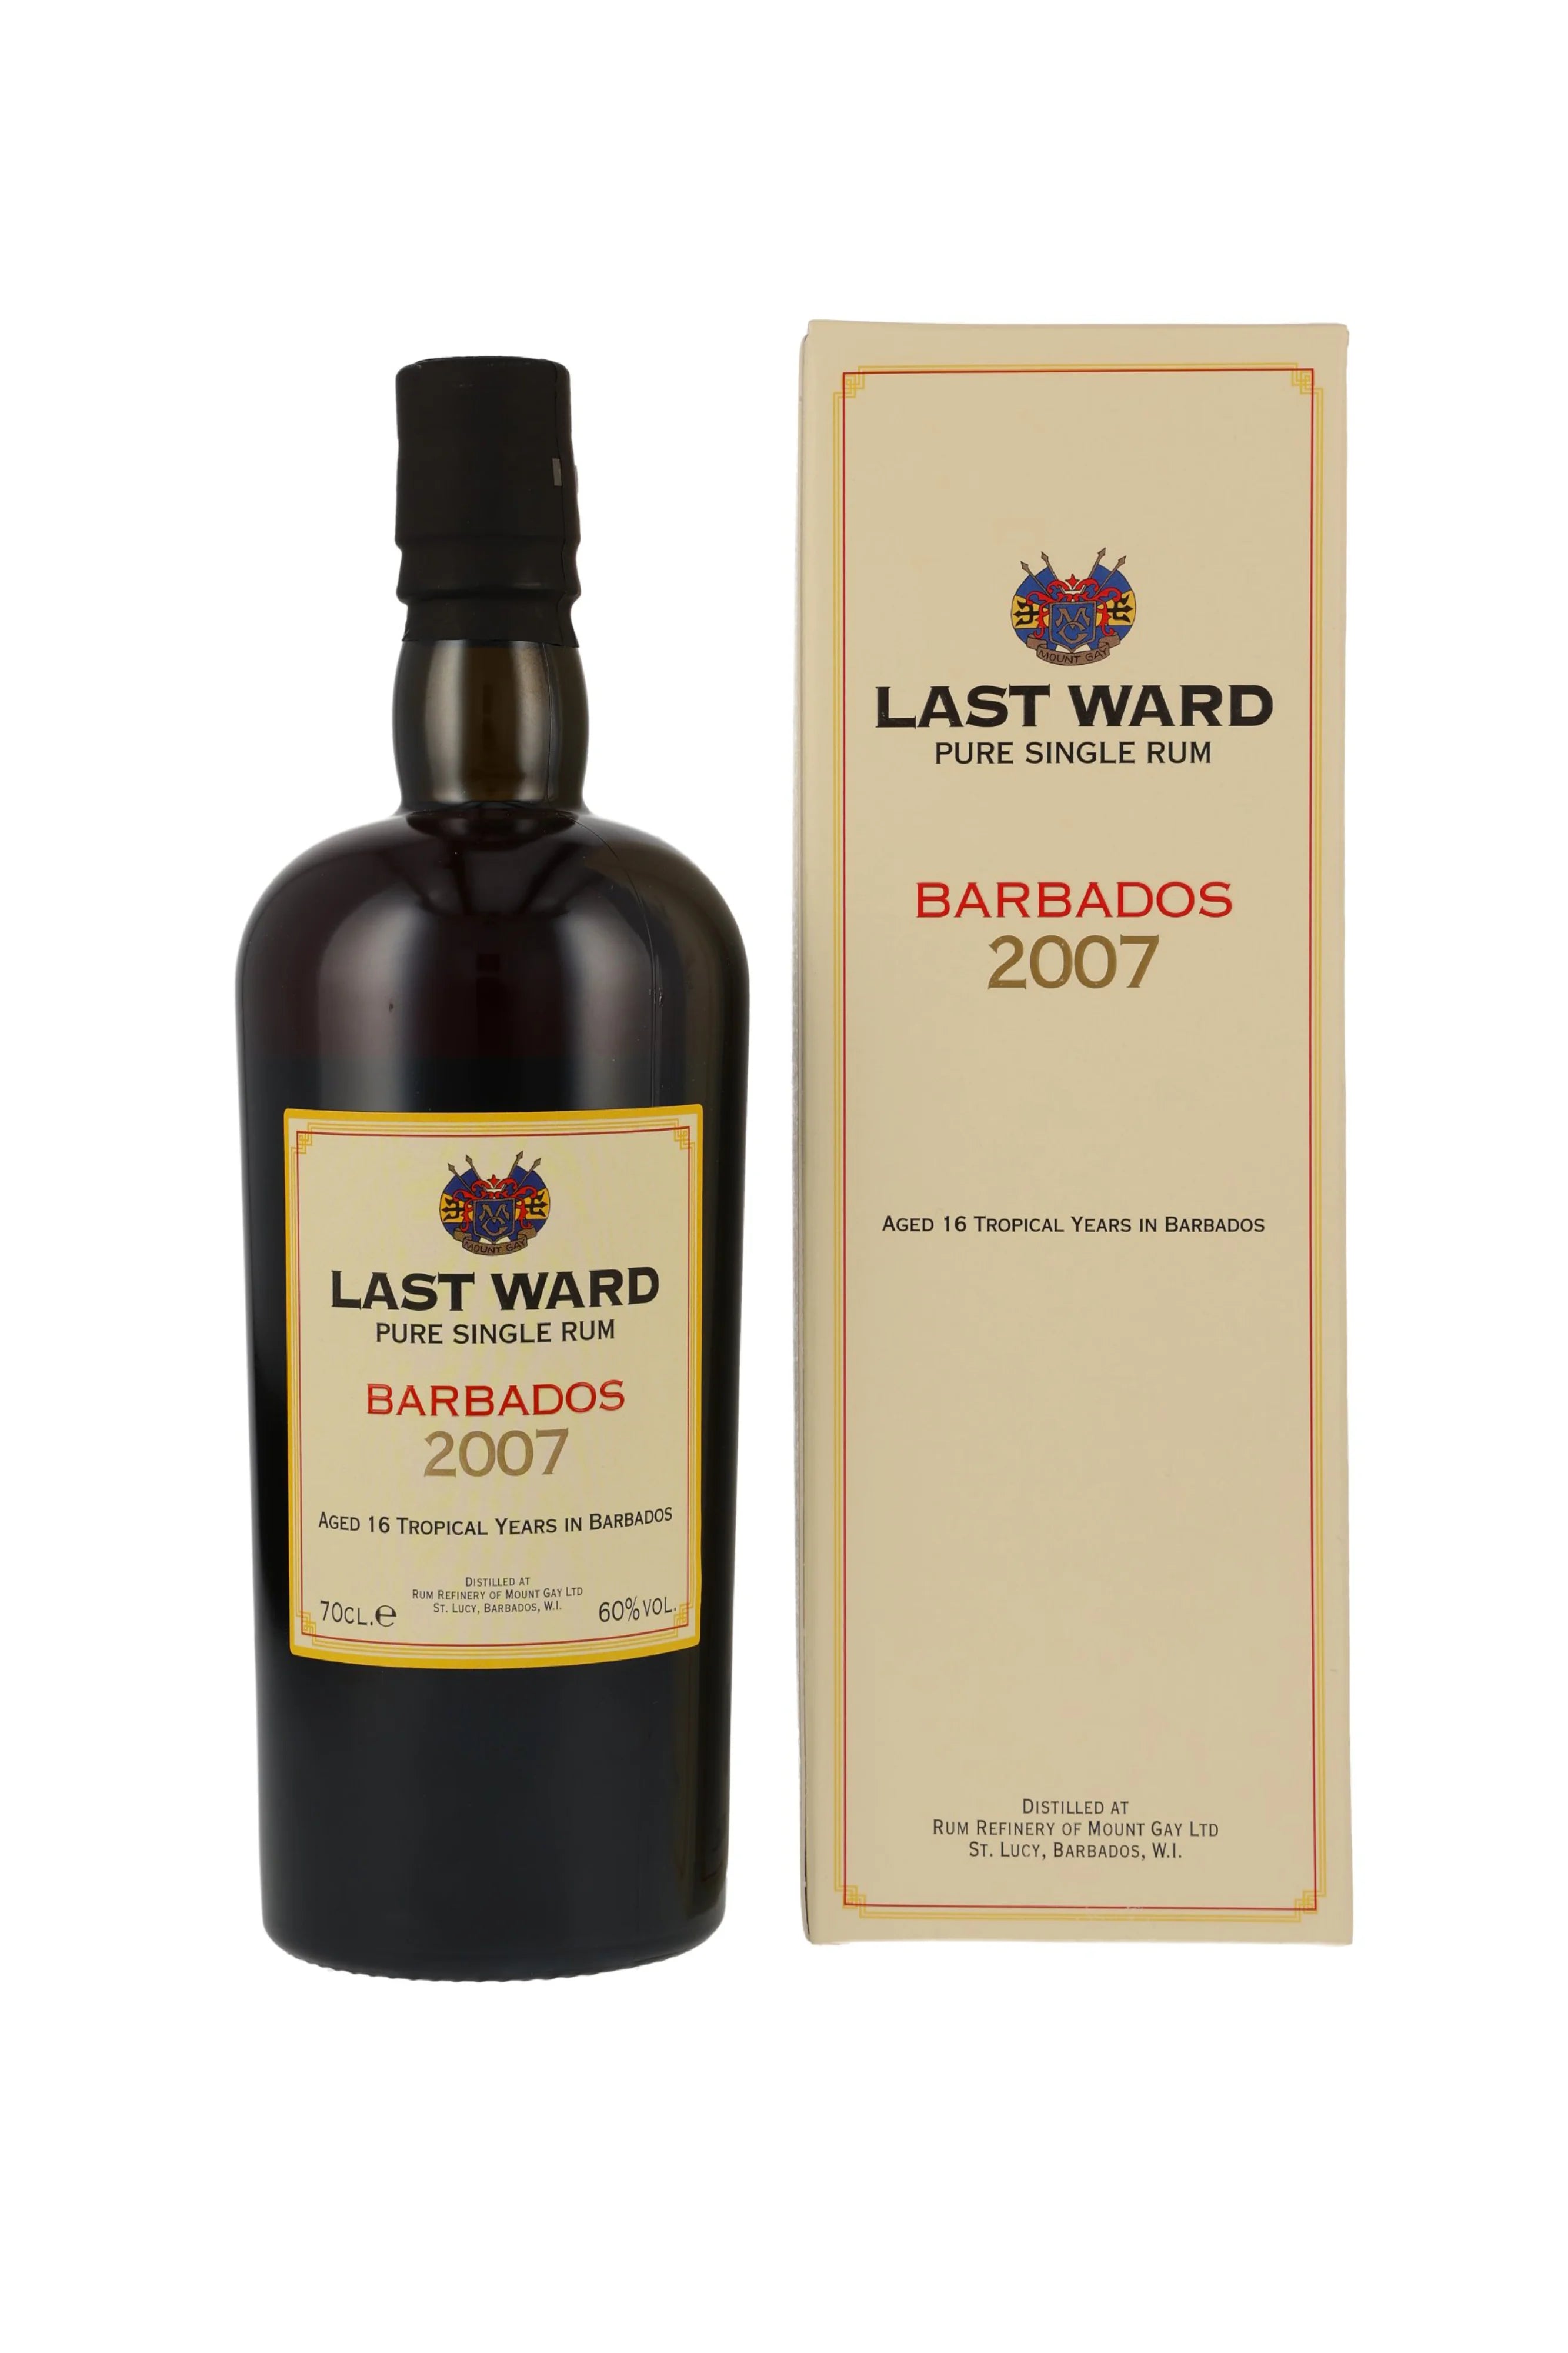 Last Ward 2007 16 Jahre Barbados Pure Single Rum 60% vol. 700ml